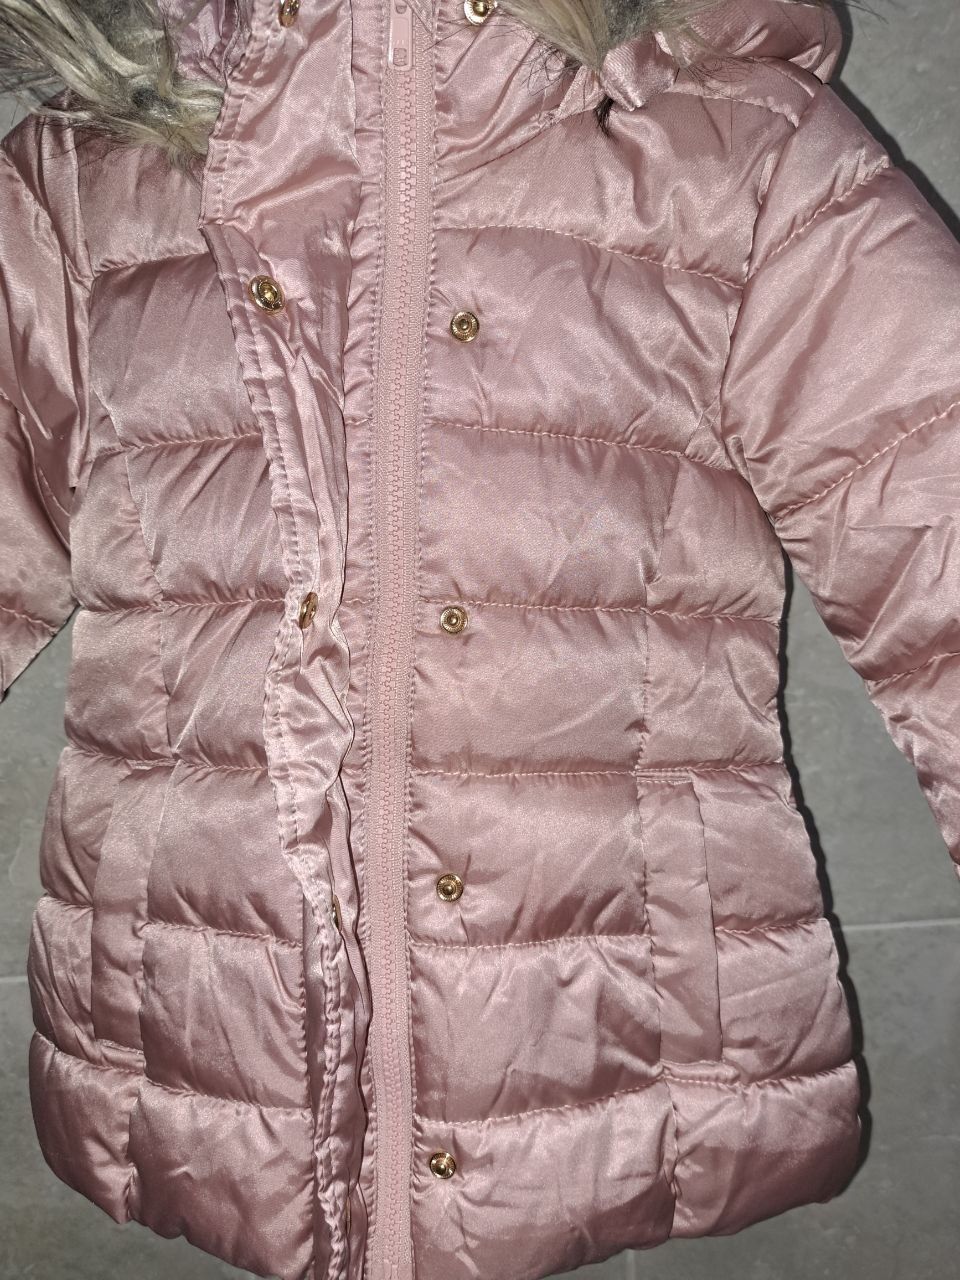 Куртка H&M на девочку 2-3года

Куртка зимняя детская на д